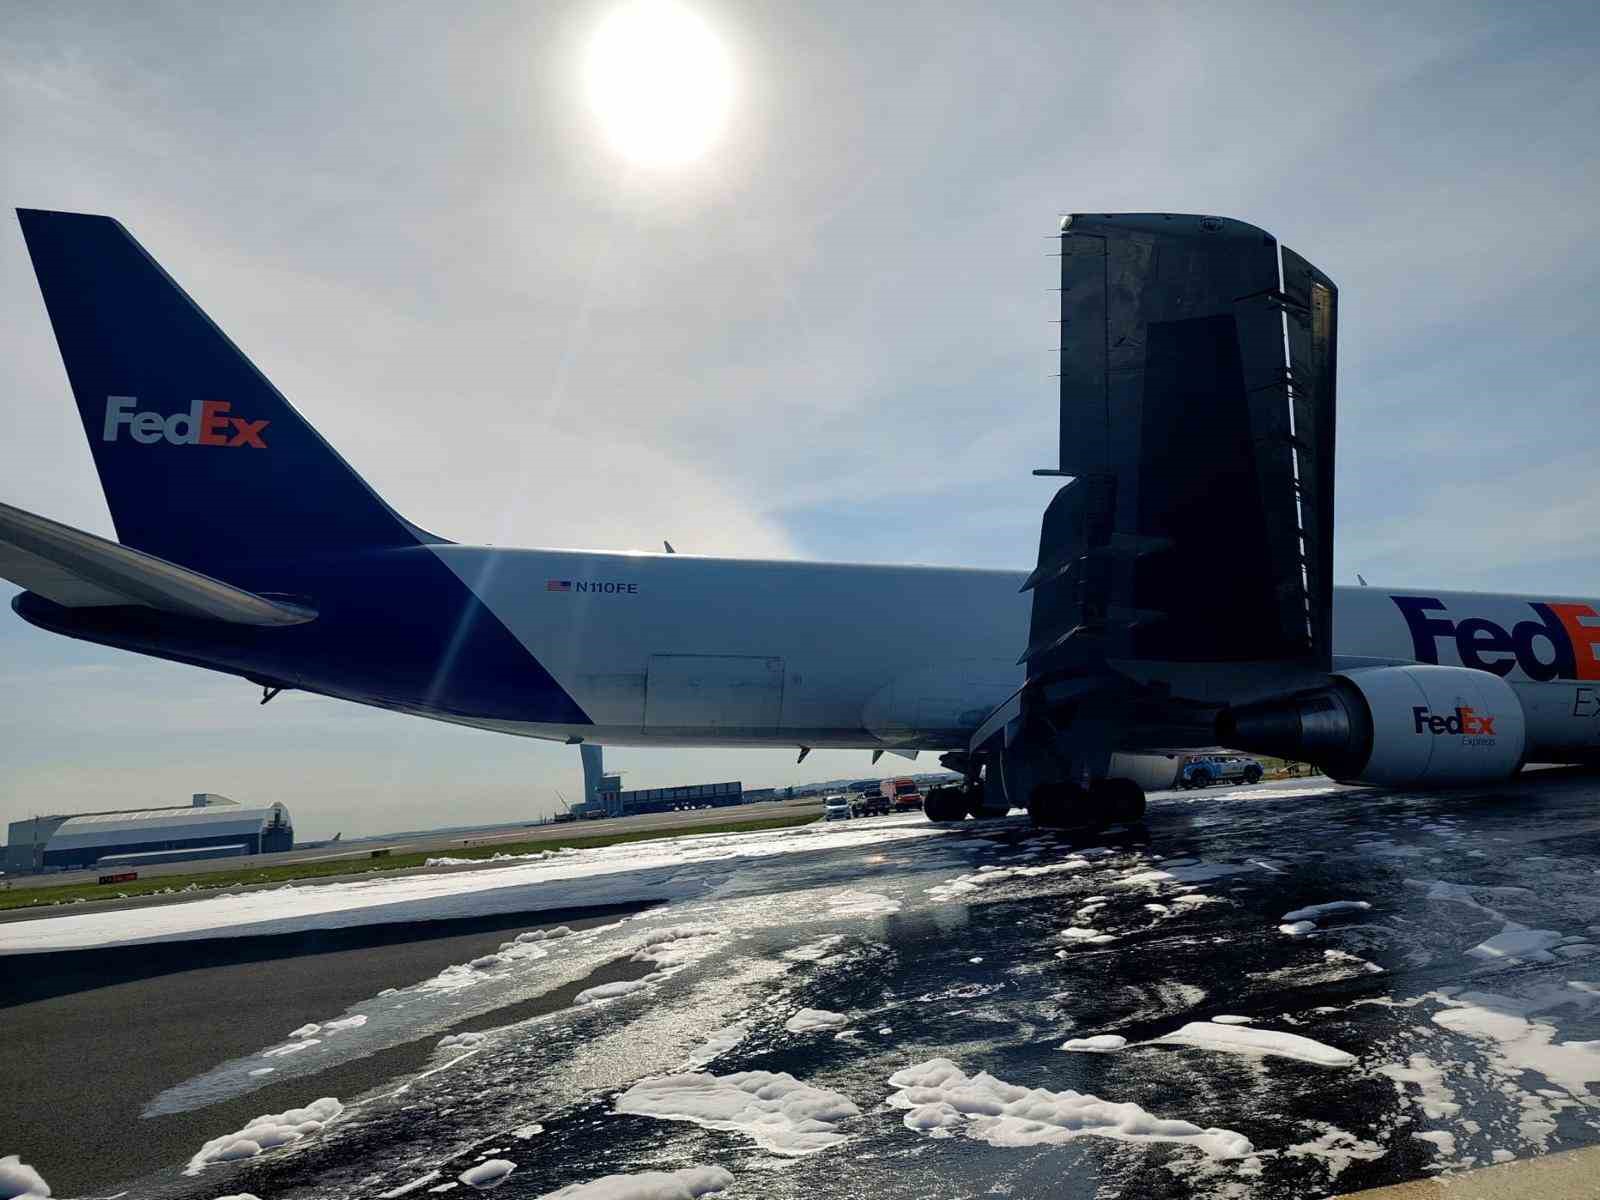 ulastirma ve altyapi bakanligindan istanbul havalimanindaki kargo ucagi kazasiyla ilgili aciklama 2 e93QJ1Wf